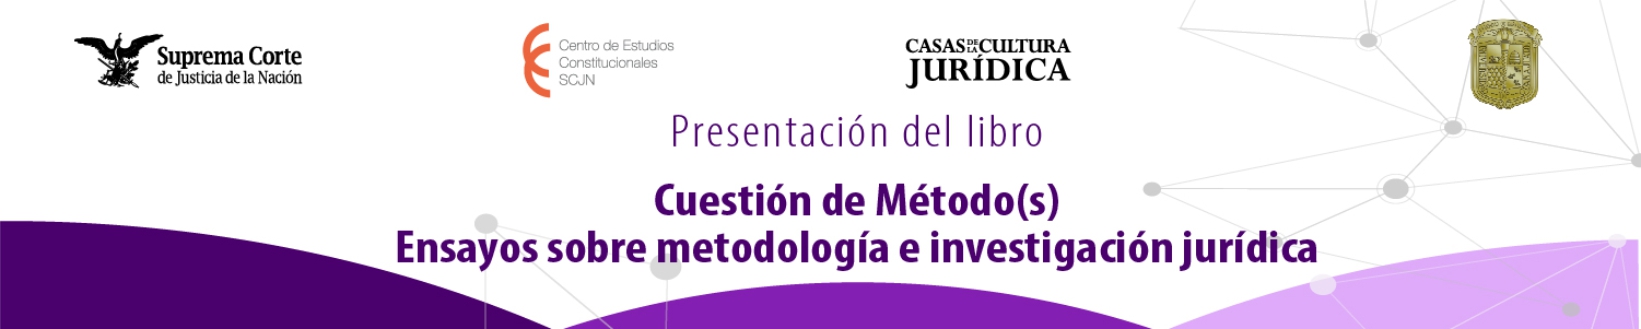 Banner de la SPresentación de Libro: Cuestión de Método(s). Ensayos sobre metodología e investigación jurídica